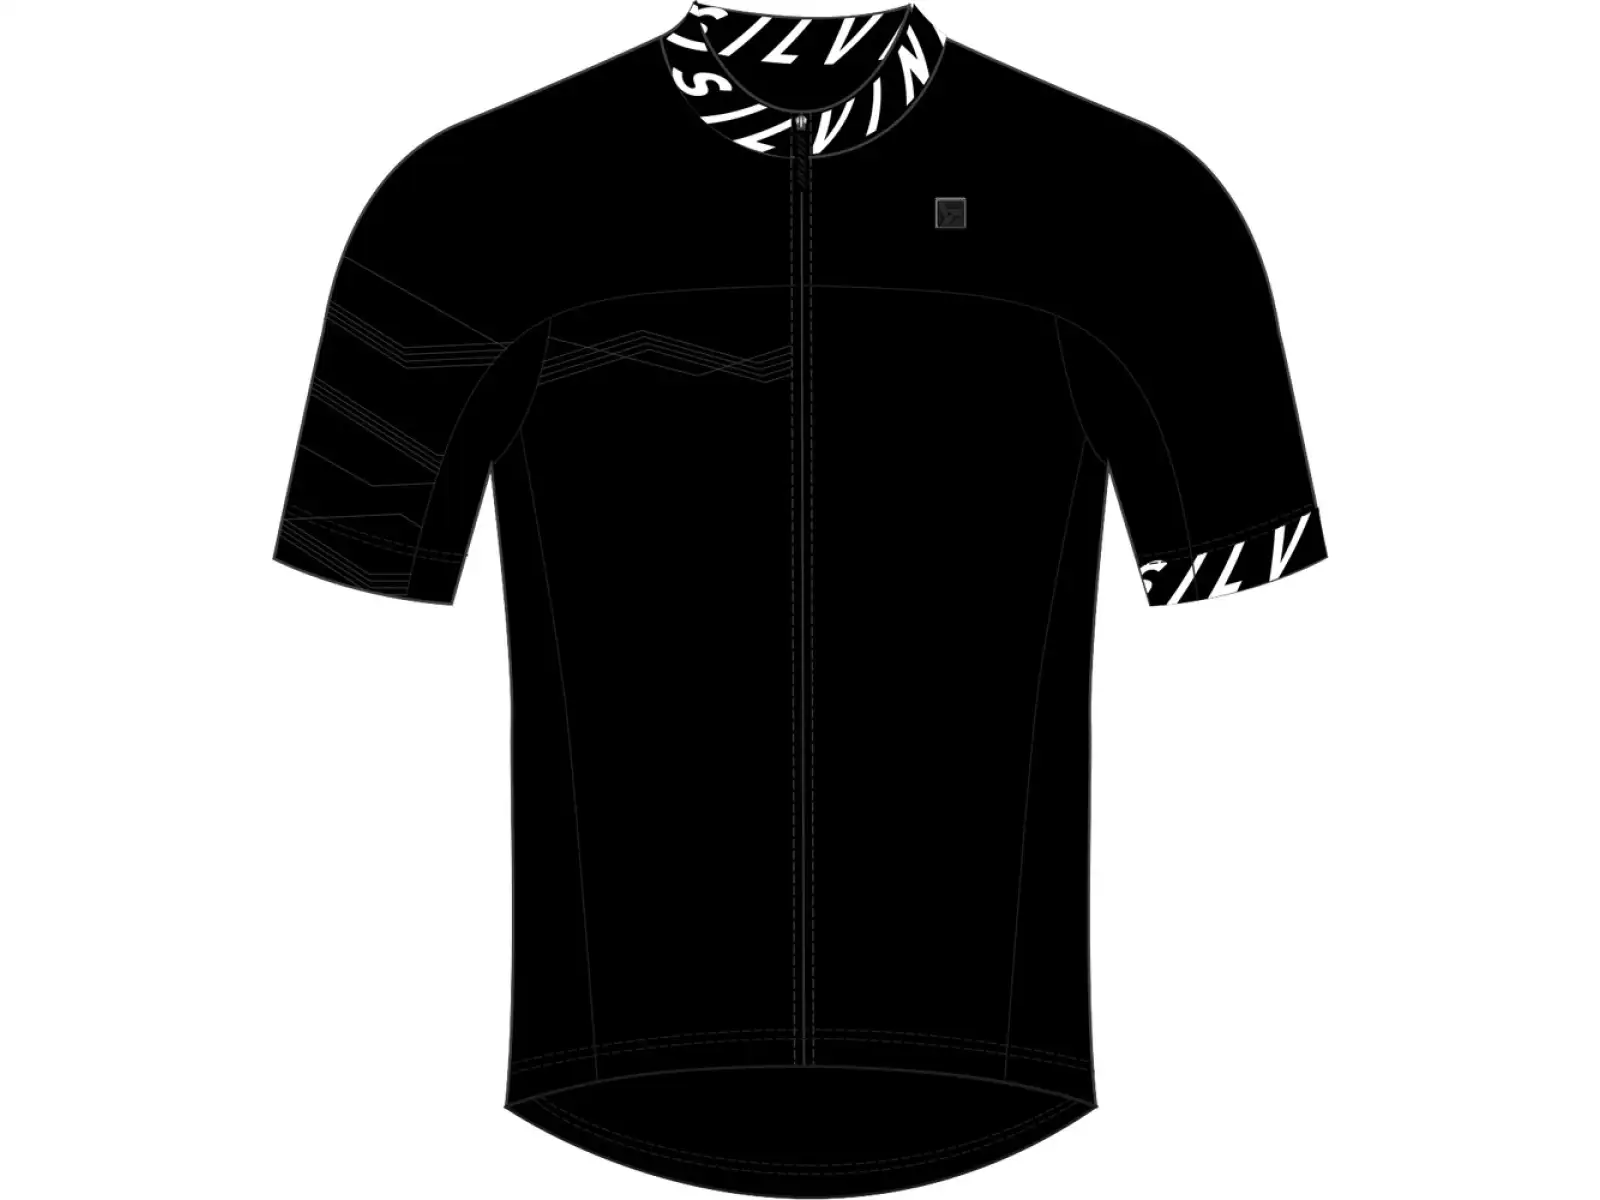 Silvini Stelvio pánsky dres s krátkym rukávom black/white